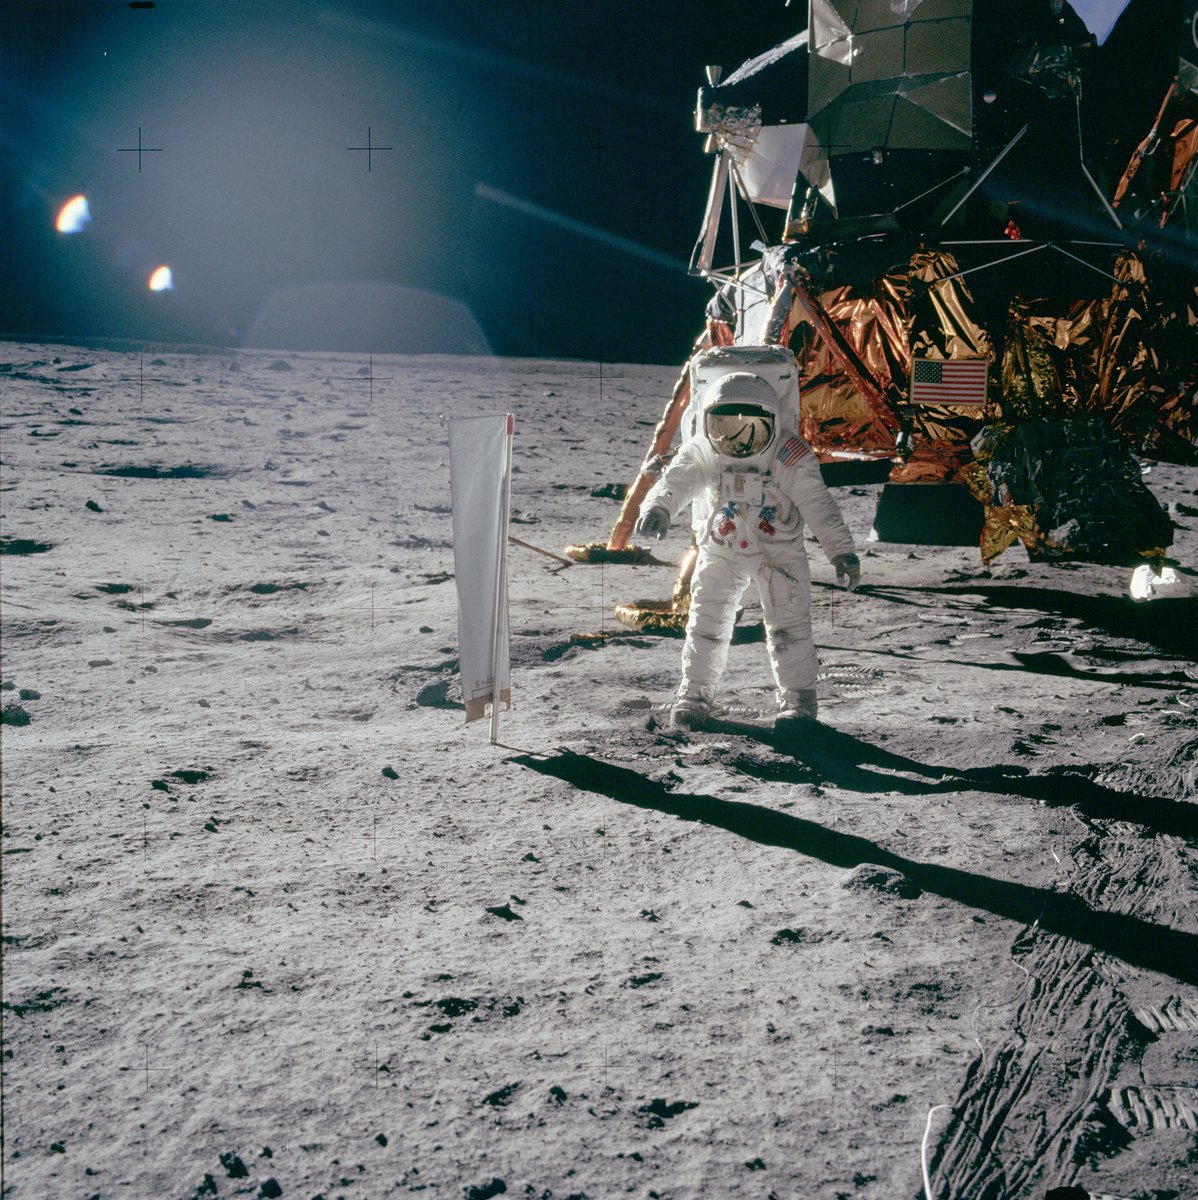 Alerta de  #AstroThreadBR sobre missões espaciais: 51 anos da Apollo 11 Pra comemorar mais um aniversário do pouso na Lua vamos ver algumas das suas fotos mais famosas - ou não tão famosas mas muito interessantes. Partiu Lua?